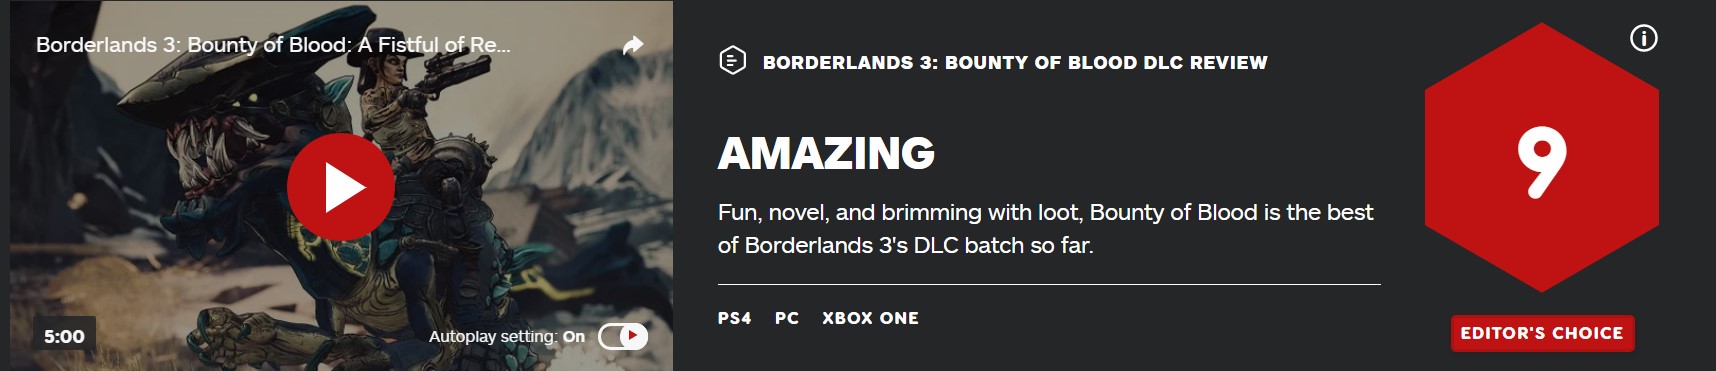 《无主之地3》IGN评“浴血镖客”是目前DLC中最棒的